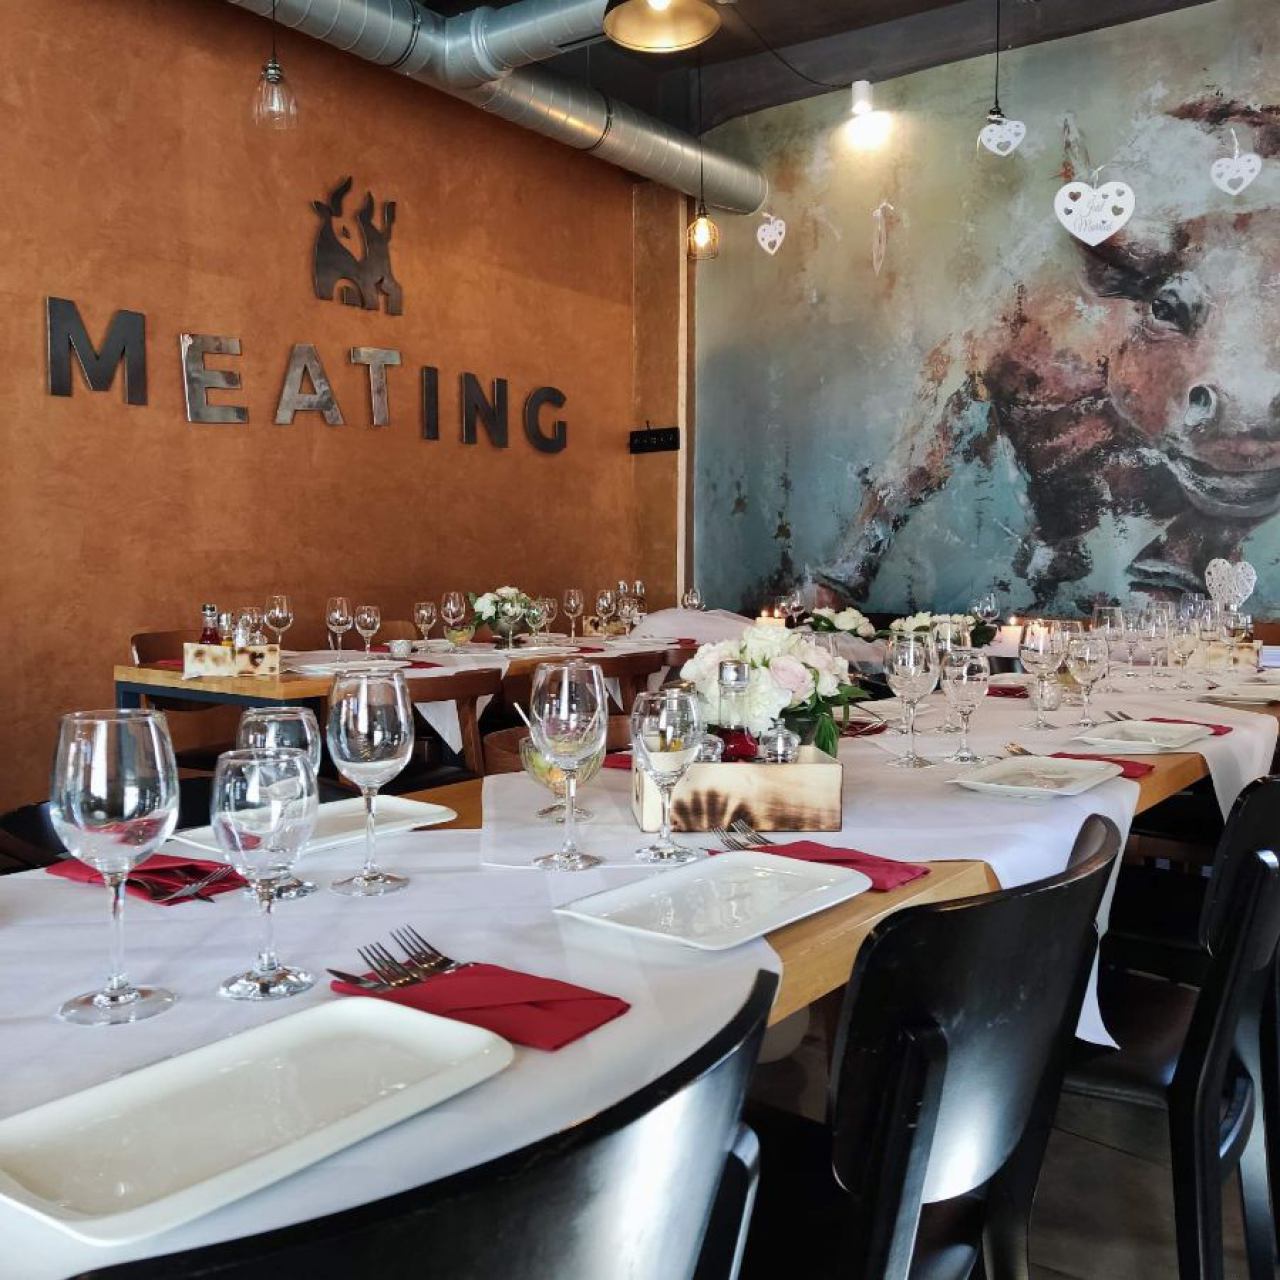 meating-restaurant-lounge-bar-4202458055.jpg